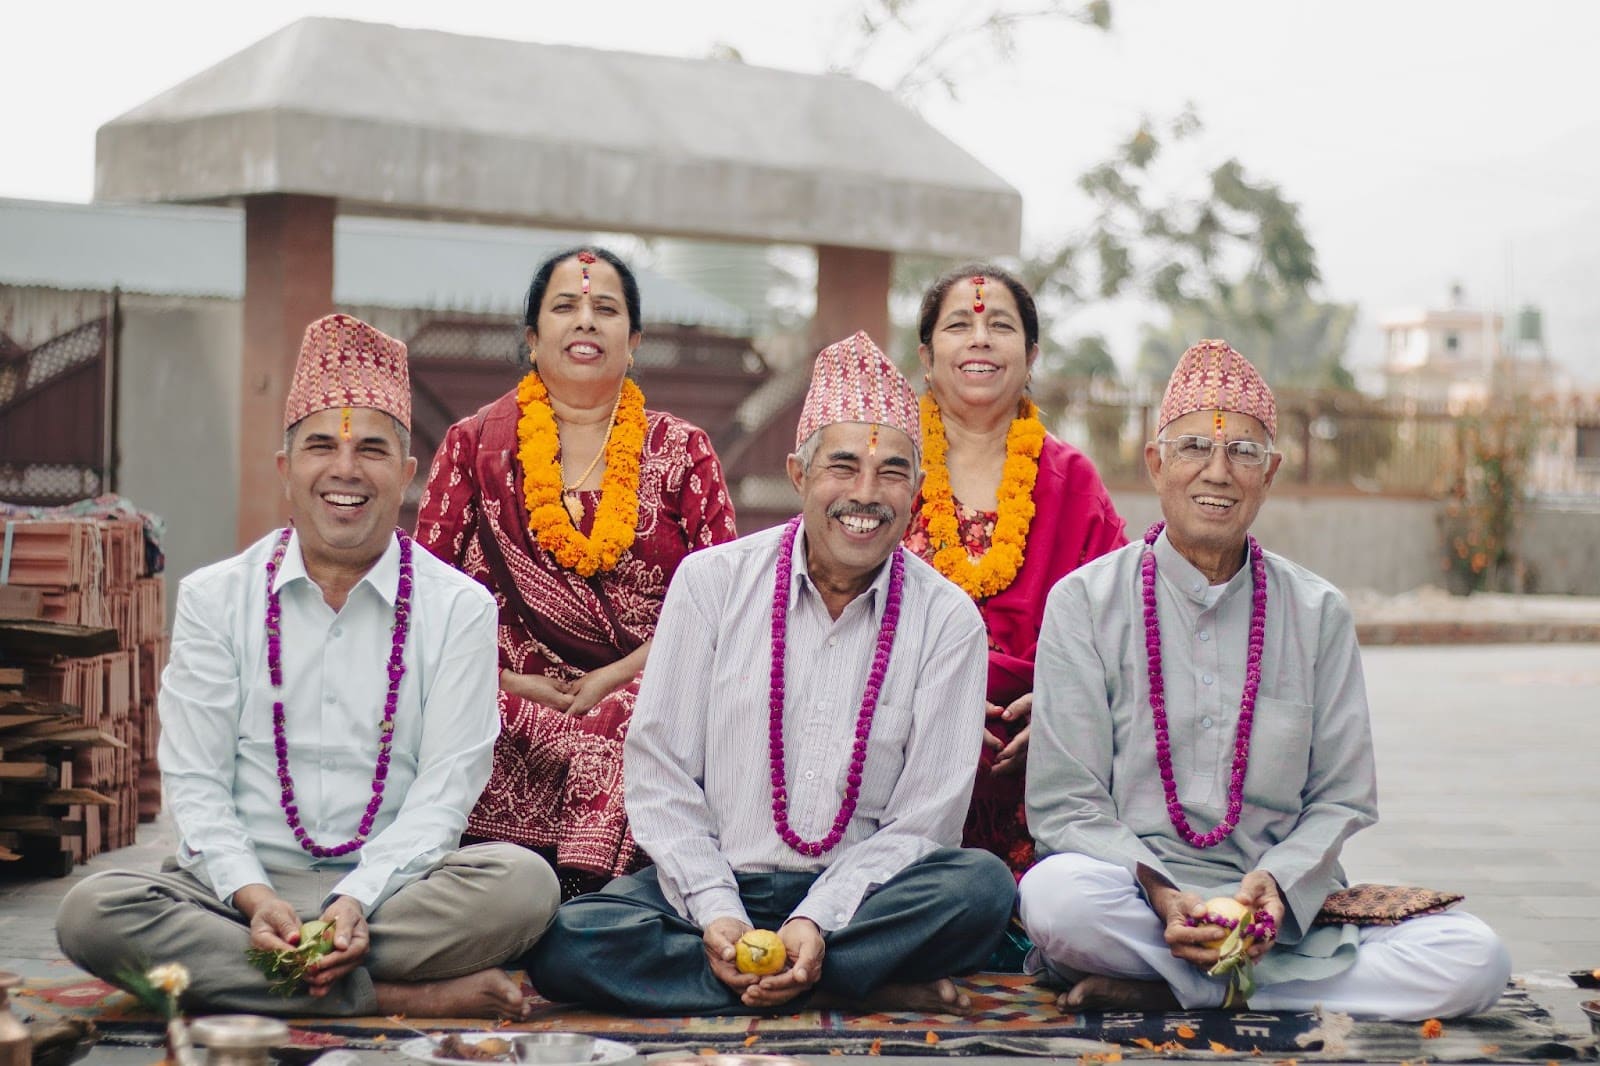 Cinque persone in Nepal in abiti tradizionali.